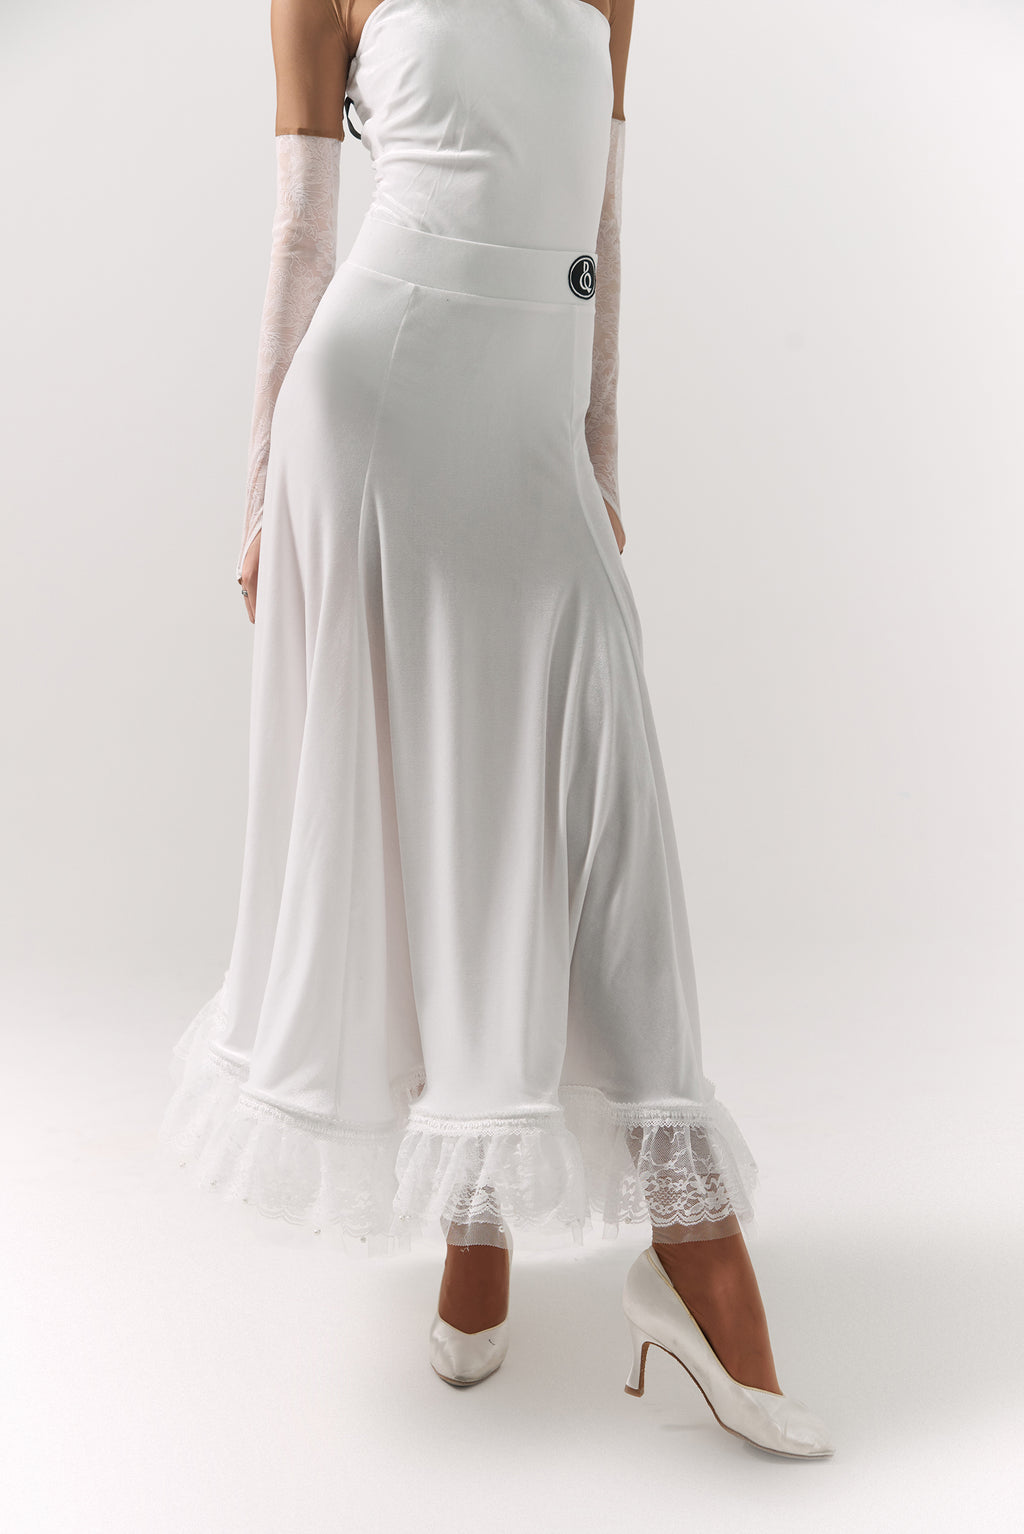 DQ-374 Velvet Lace Trim Godet Skirt